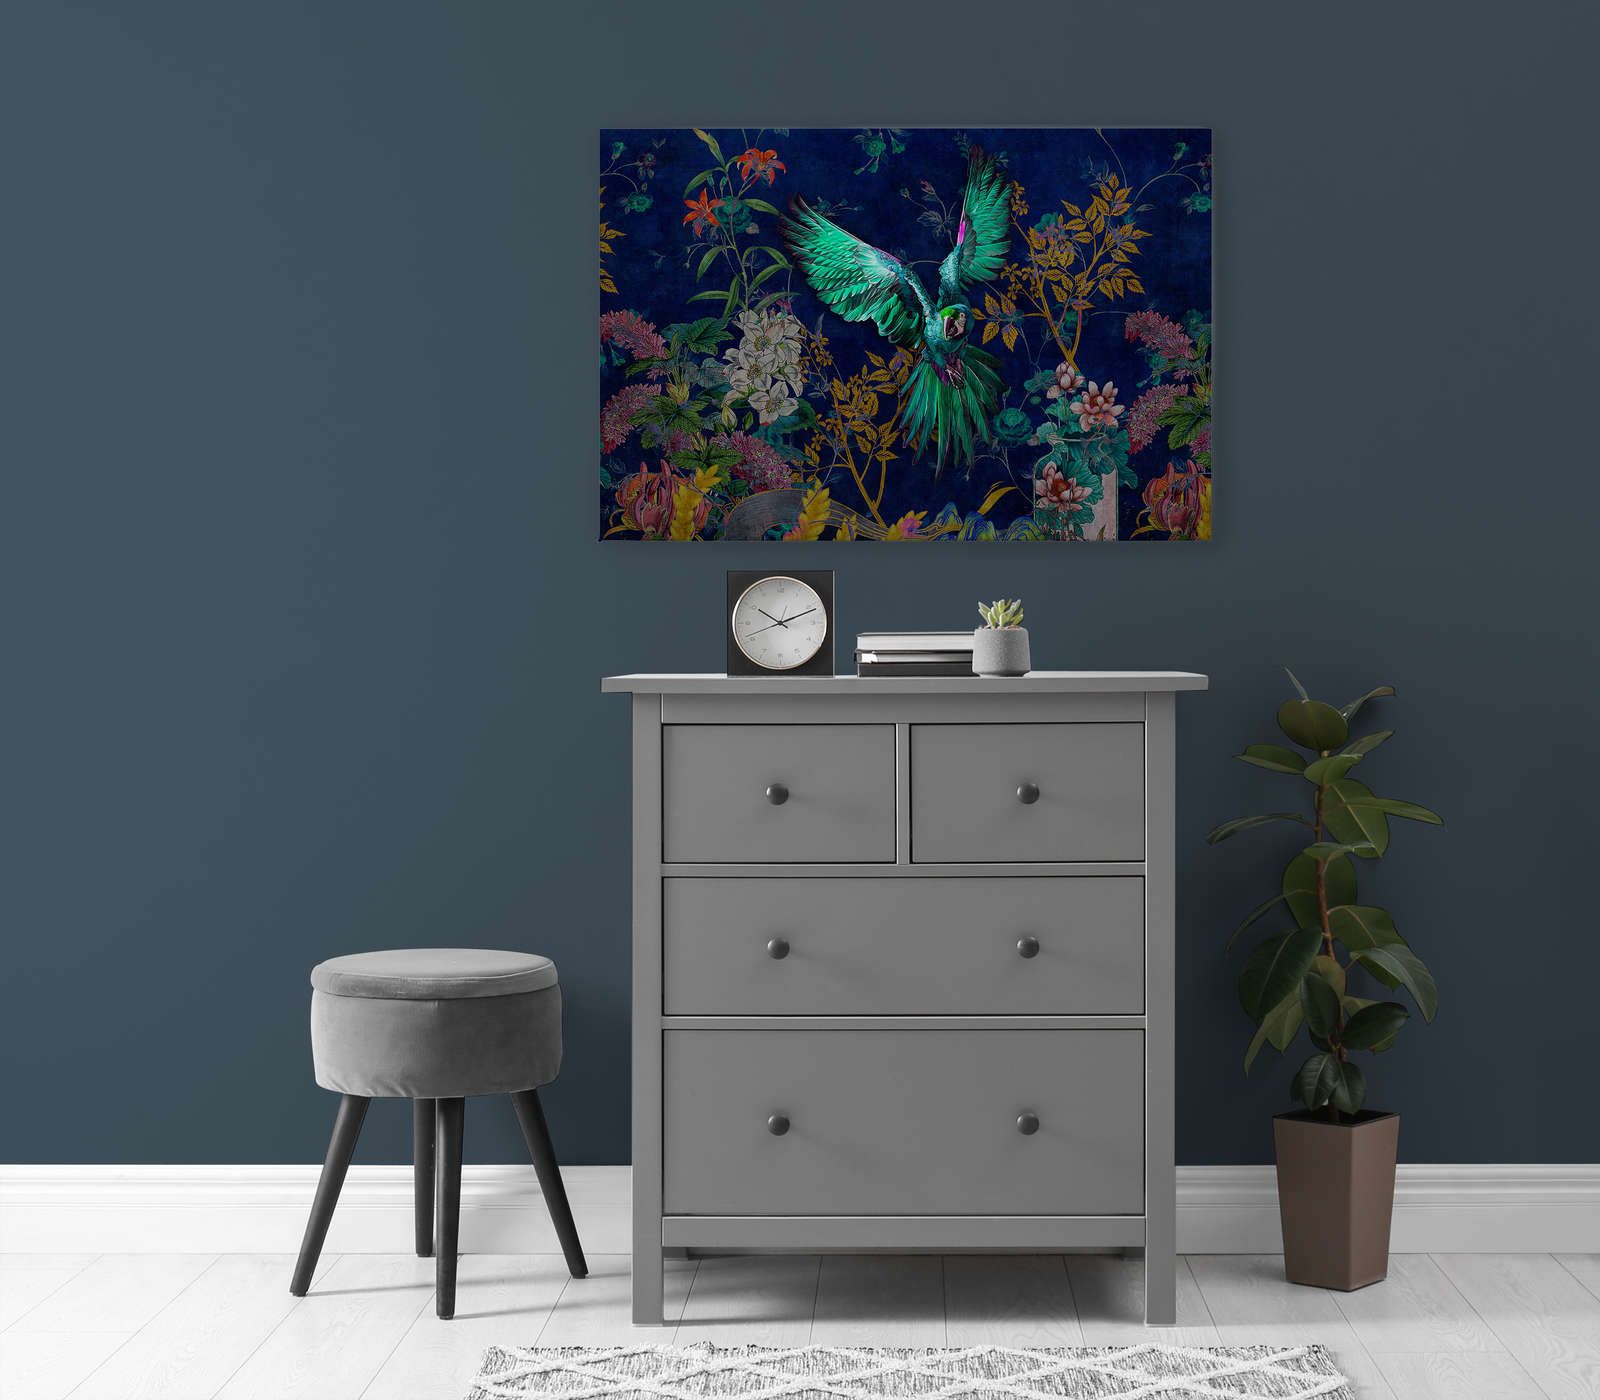             Tropical Hero 1 - Toile Fleurs & Perroquet couleurs intenses - 0,90 m x 0,60 m
        